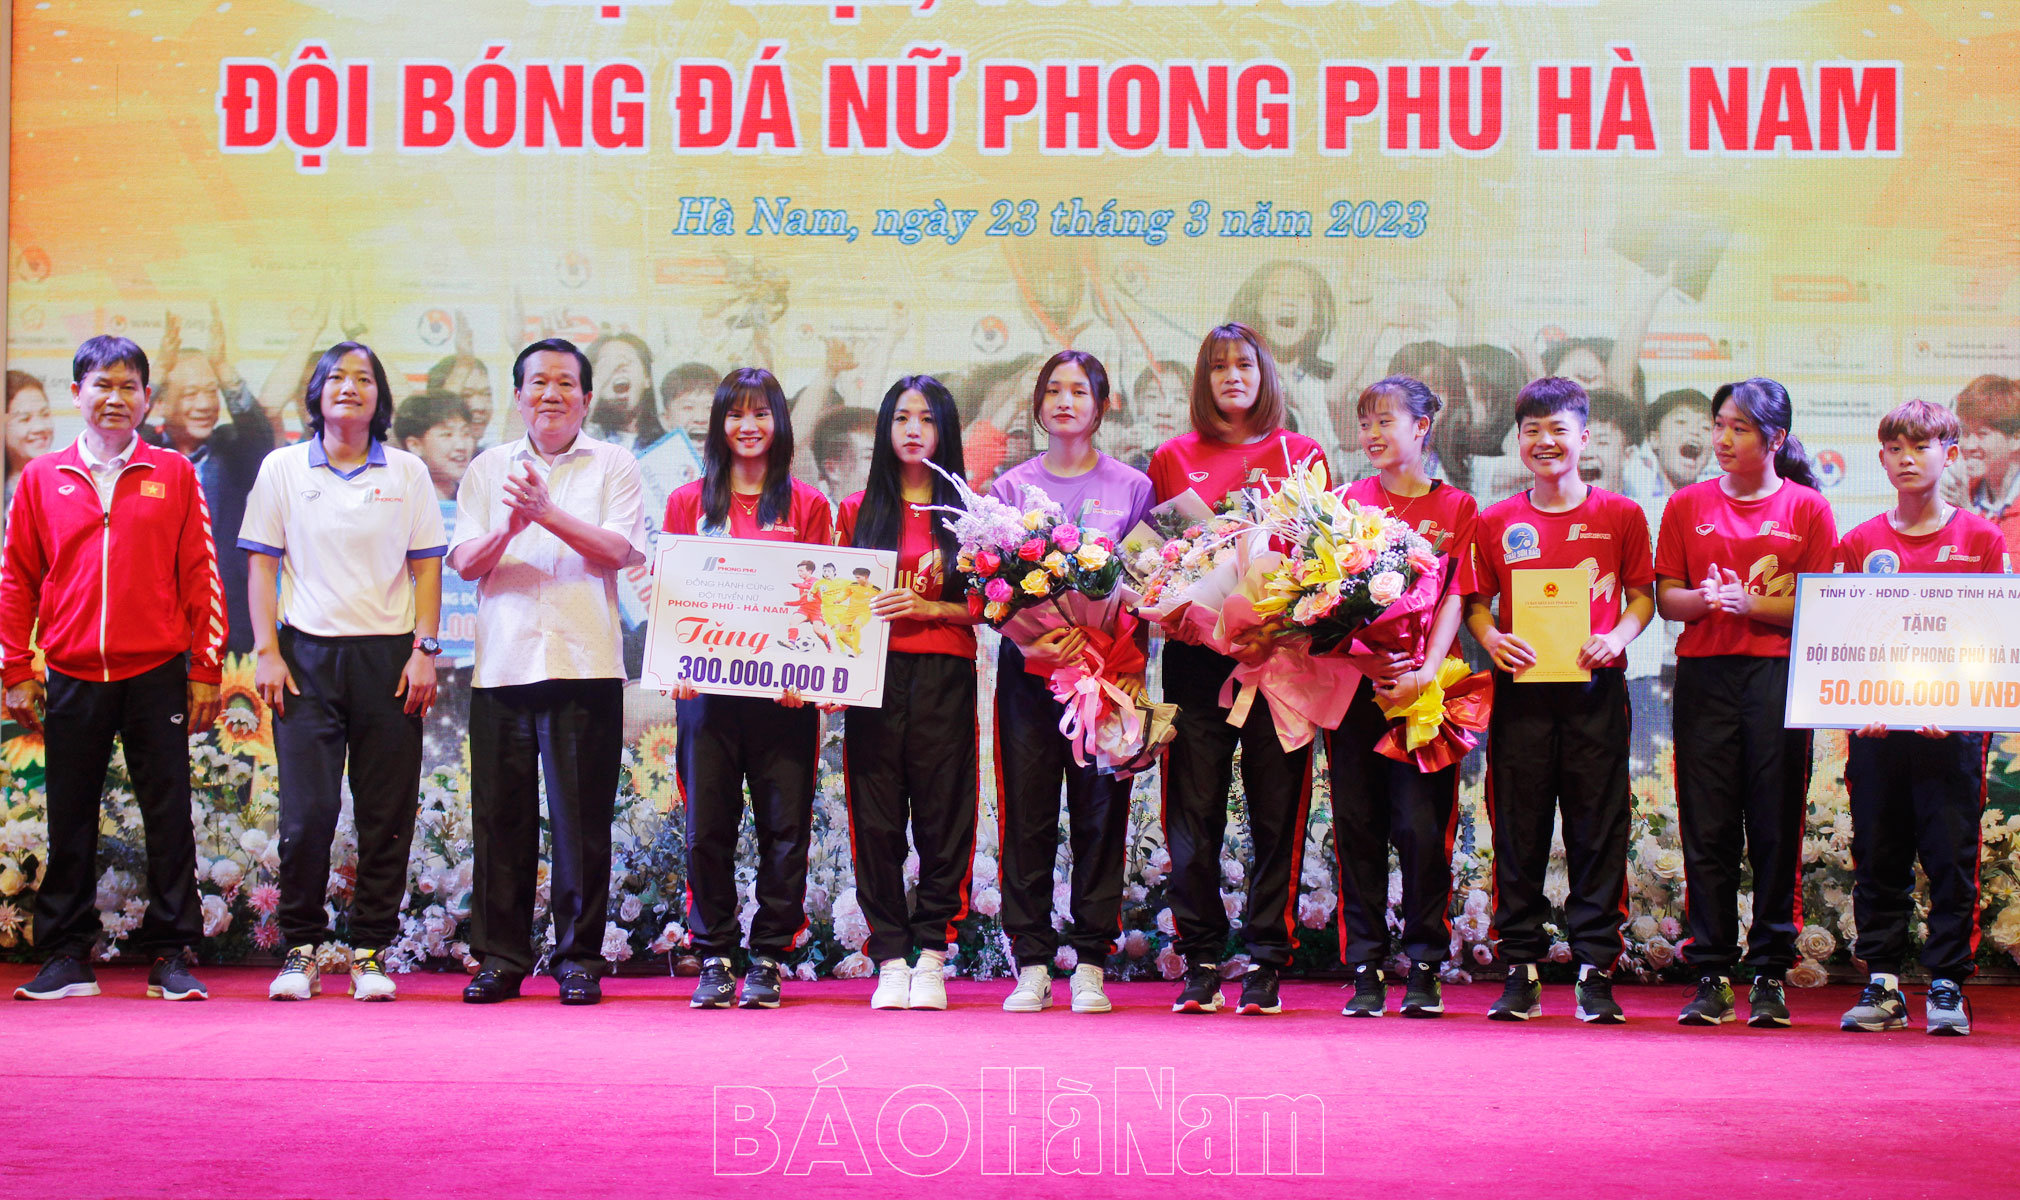 Gặp mặt tuyên dương Đội Bóng đá nữ Phong Phú Hà Nam